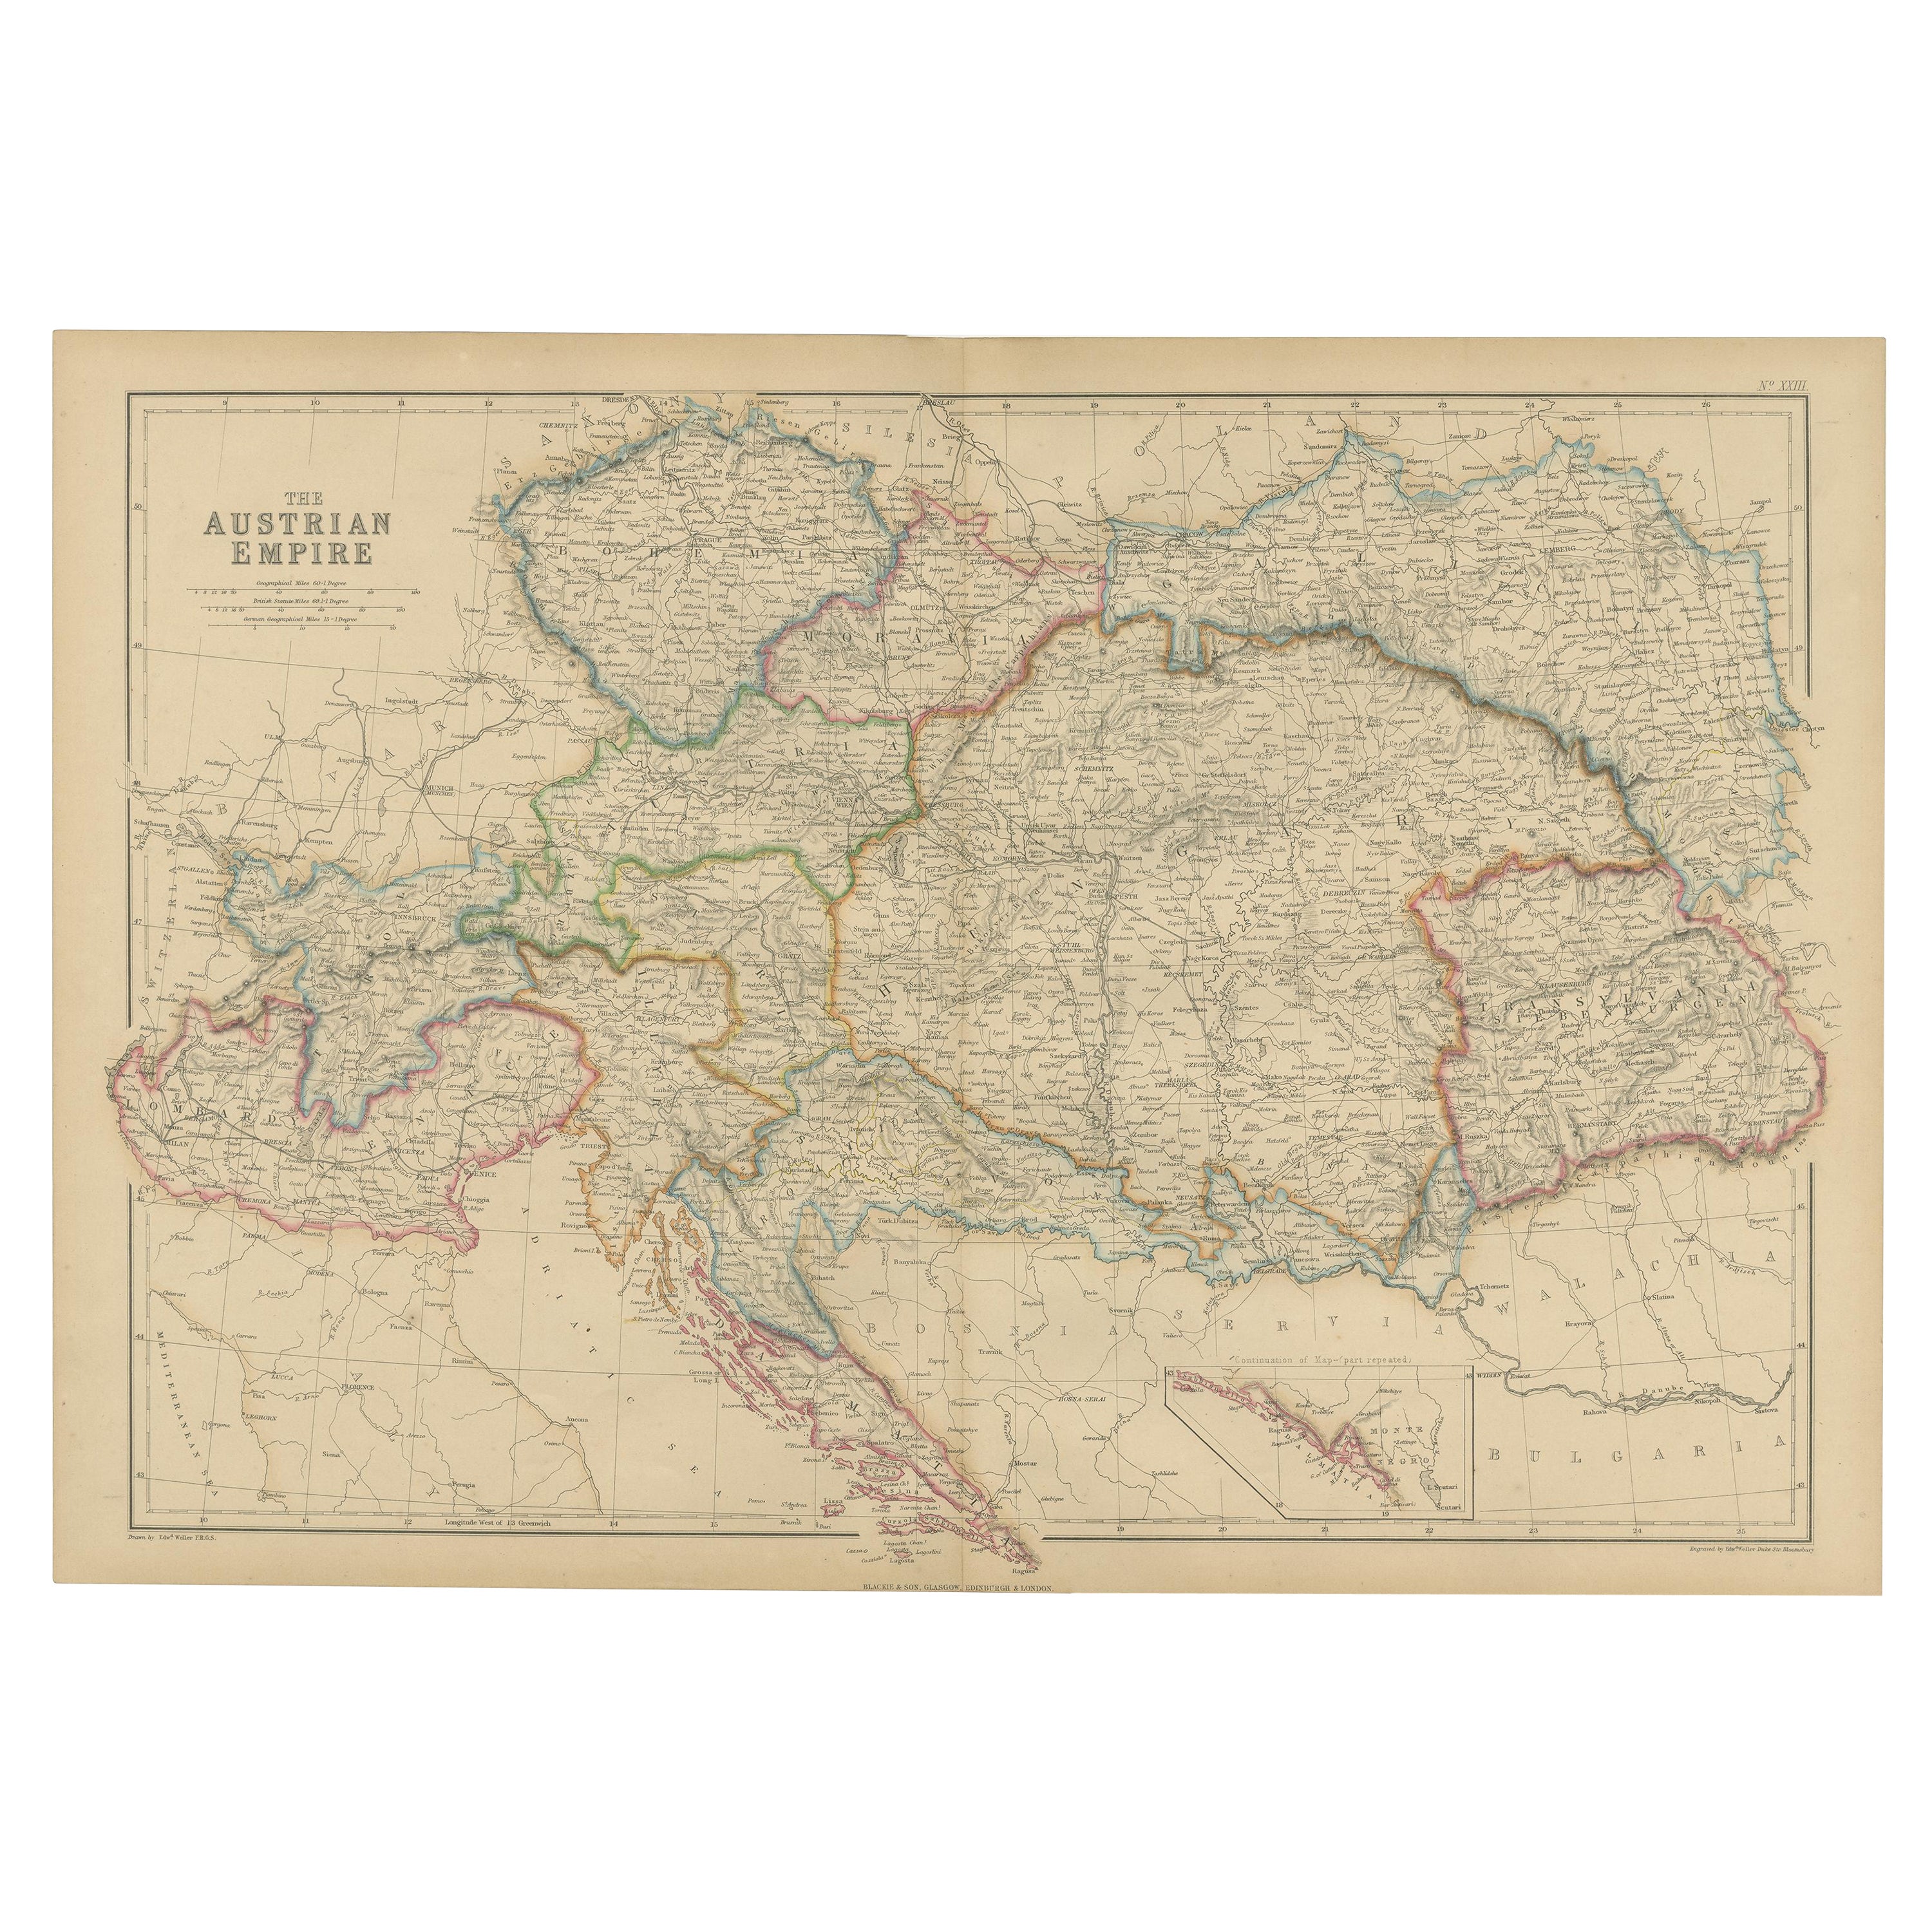 Carte ancienne de l'Empire autrichien par W. G. Blackie, 1859